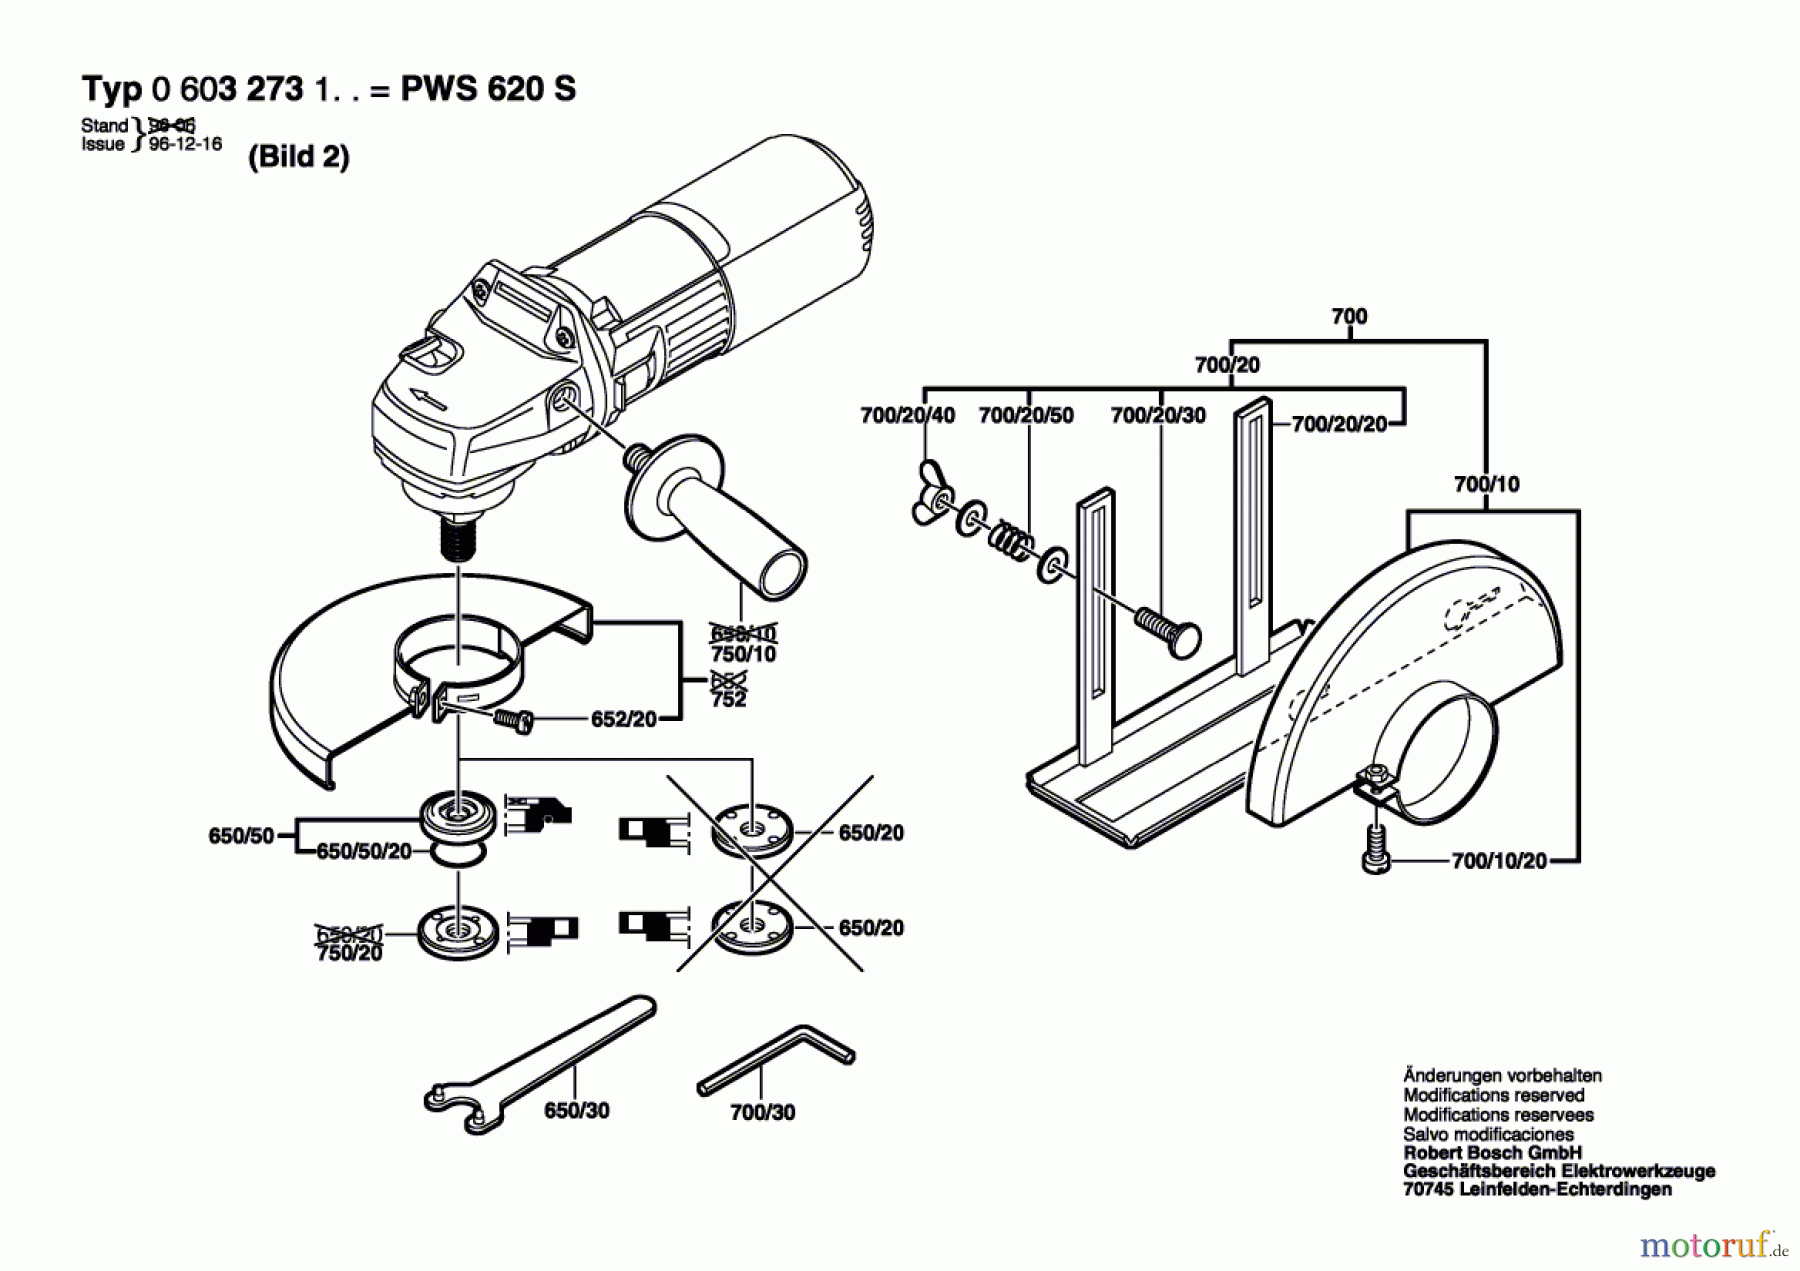  Bosch Werkzeug Winkelschleifer PWS 620 S Seite 2